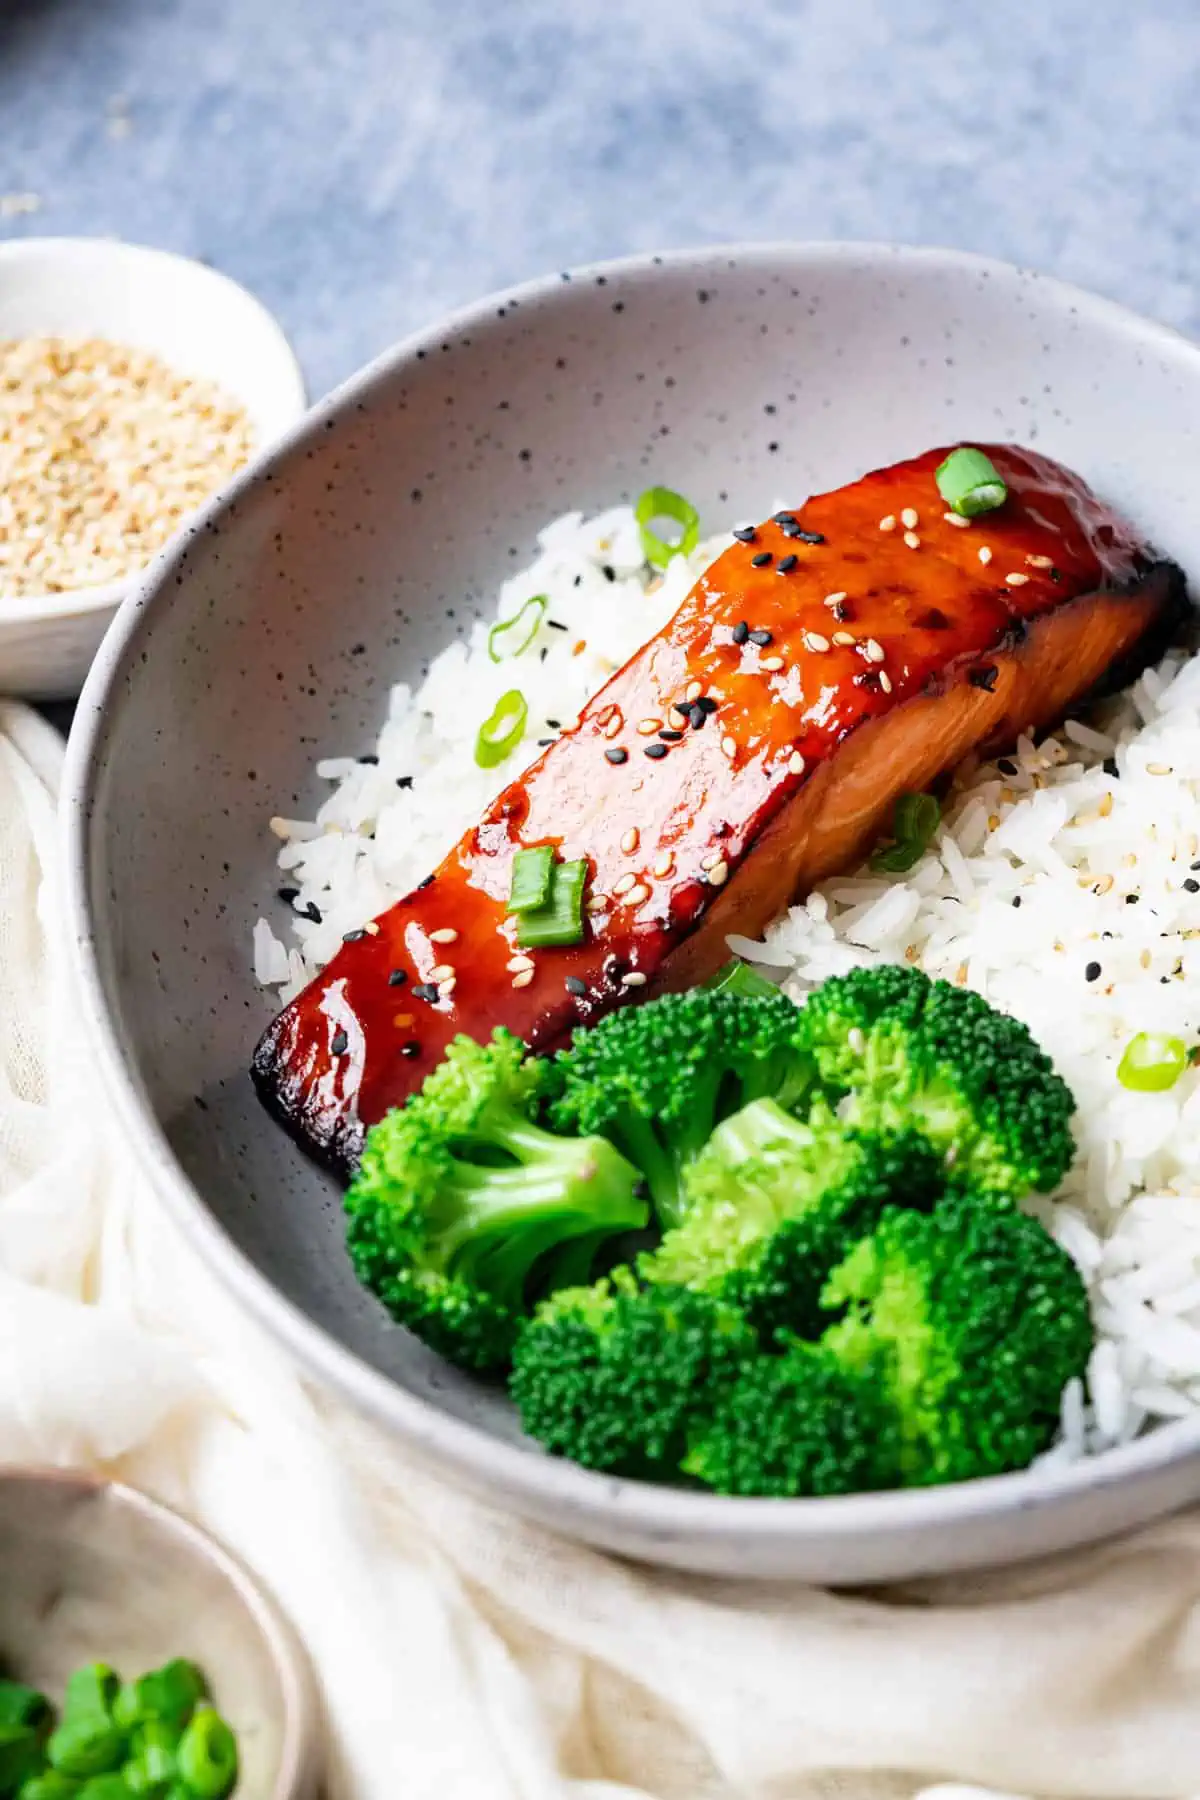 Teriyaki fish with broccoli and rice.